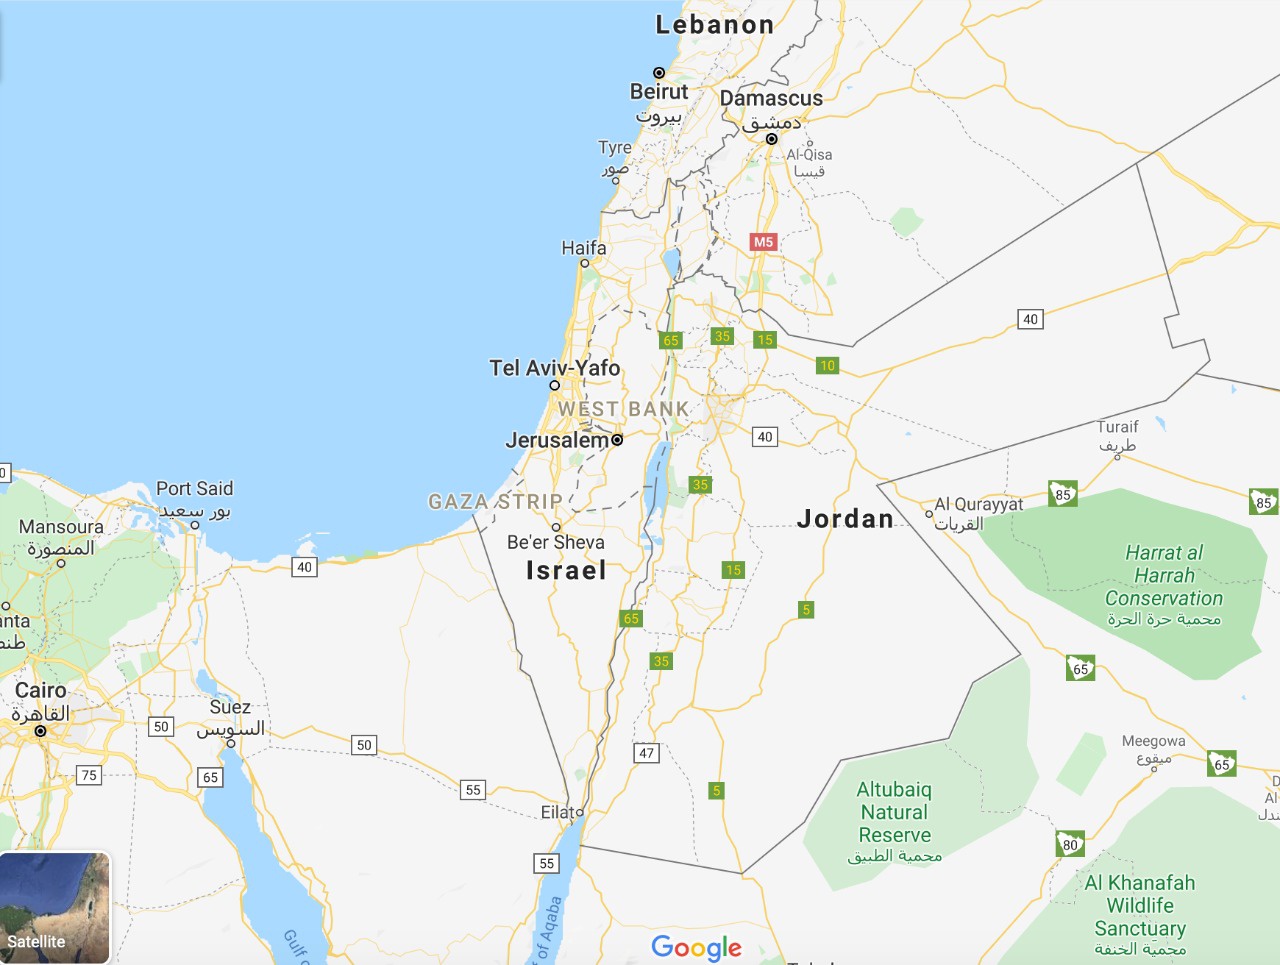 Палестина исчезла с карт Google - ТРК Звезда Новости, 16.07.2020